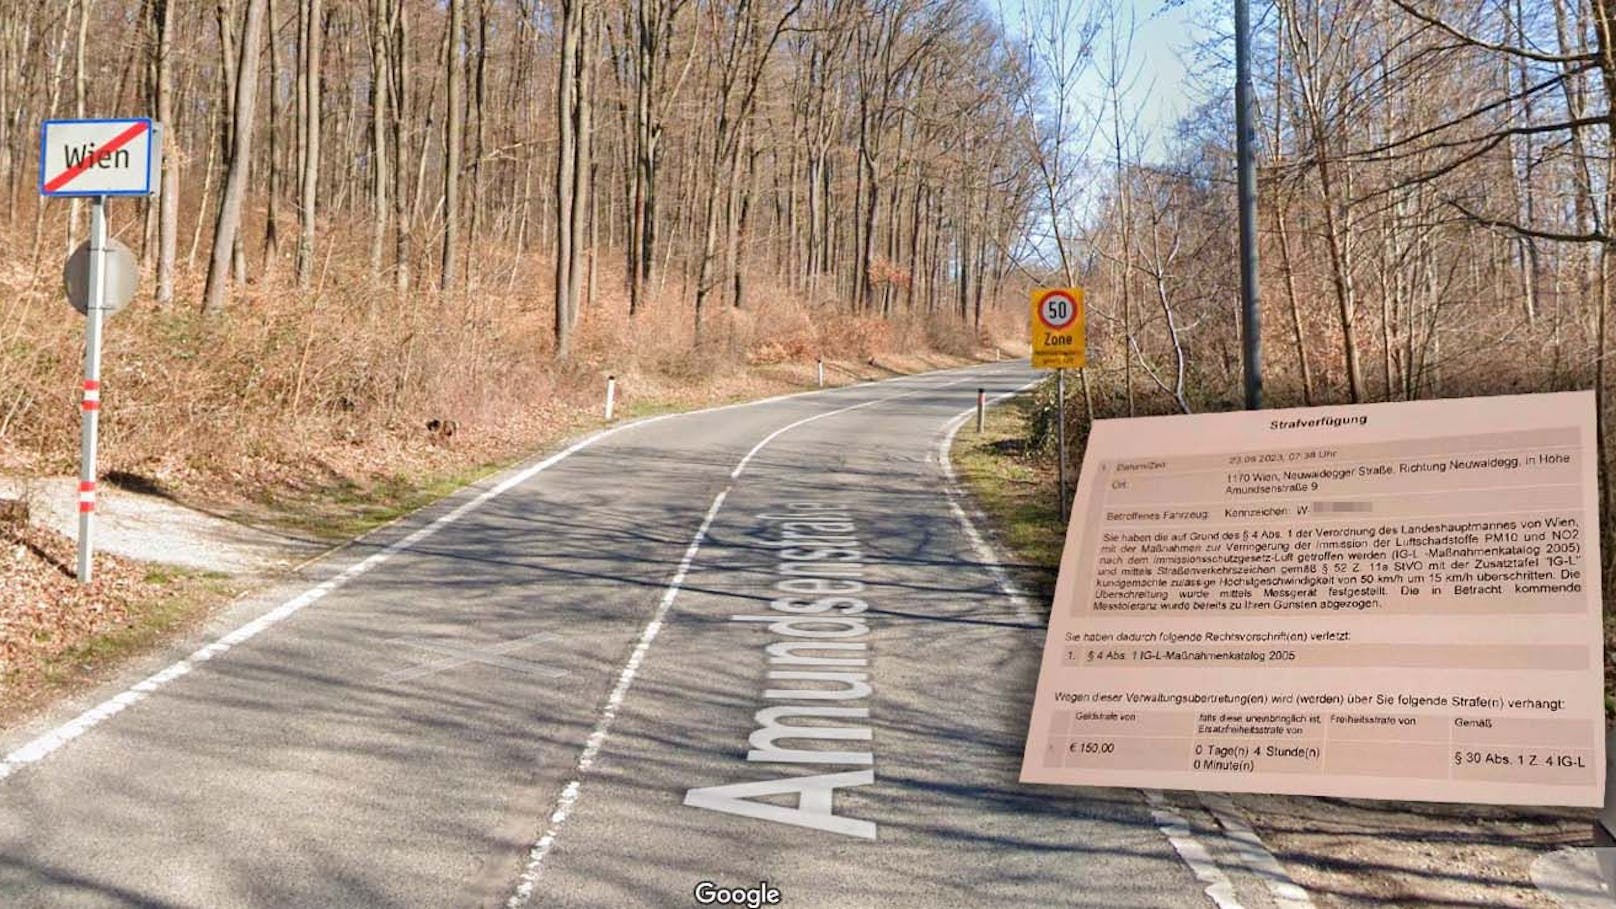 Wiener kassiert 150 Euro Strafe – für 15 km/h zu viel